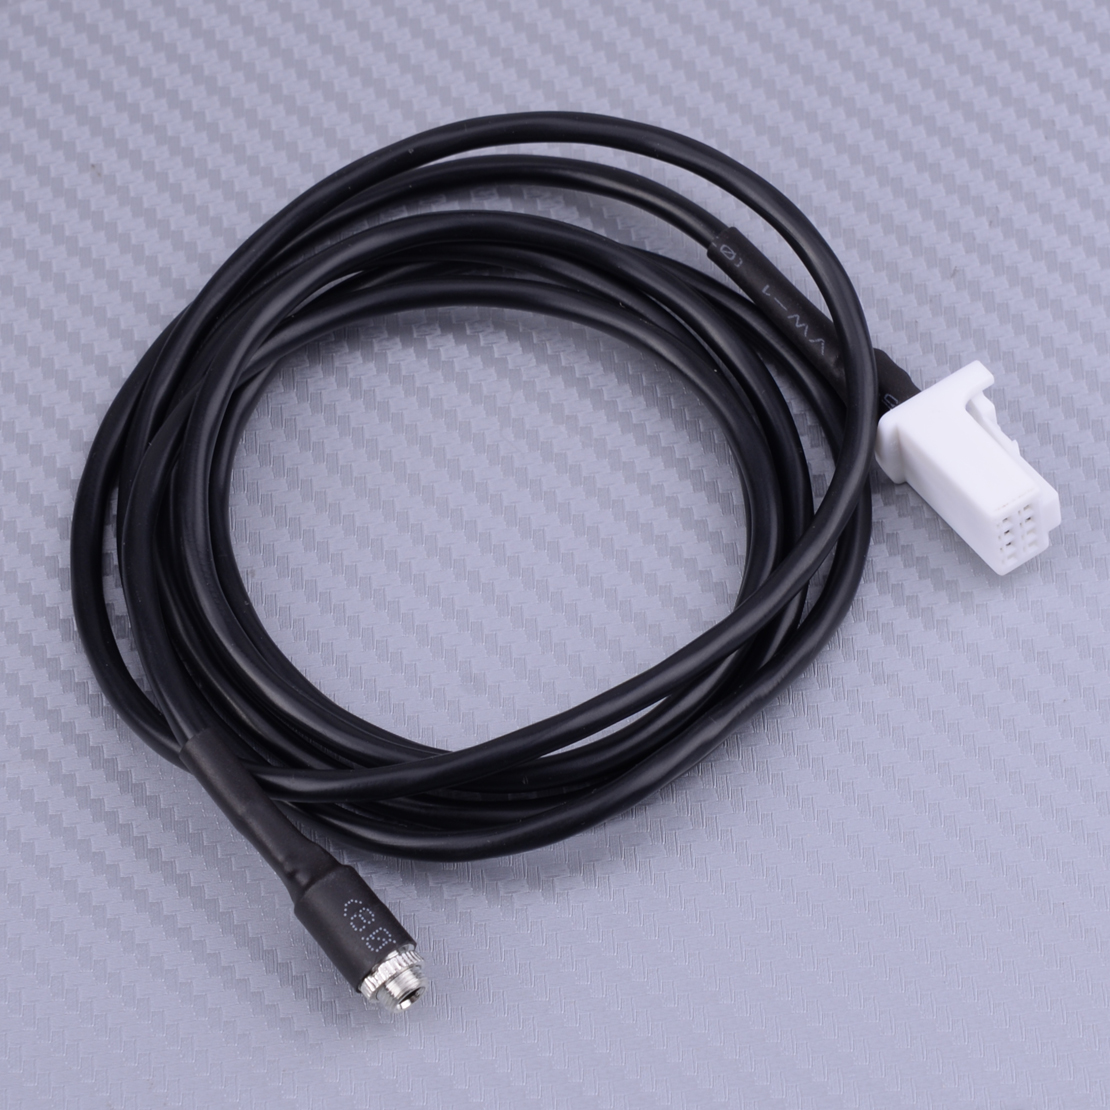 AUX Input 3.5mm Female Adaptor Cable For Suzuki SX4 Grand Vitara 2007-2010